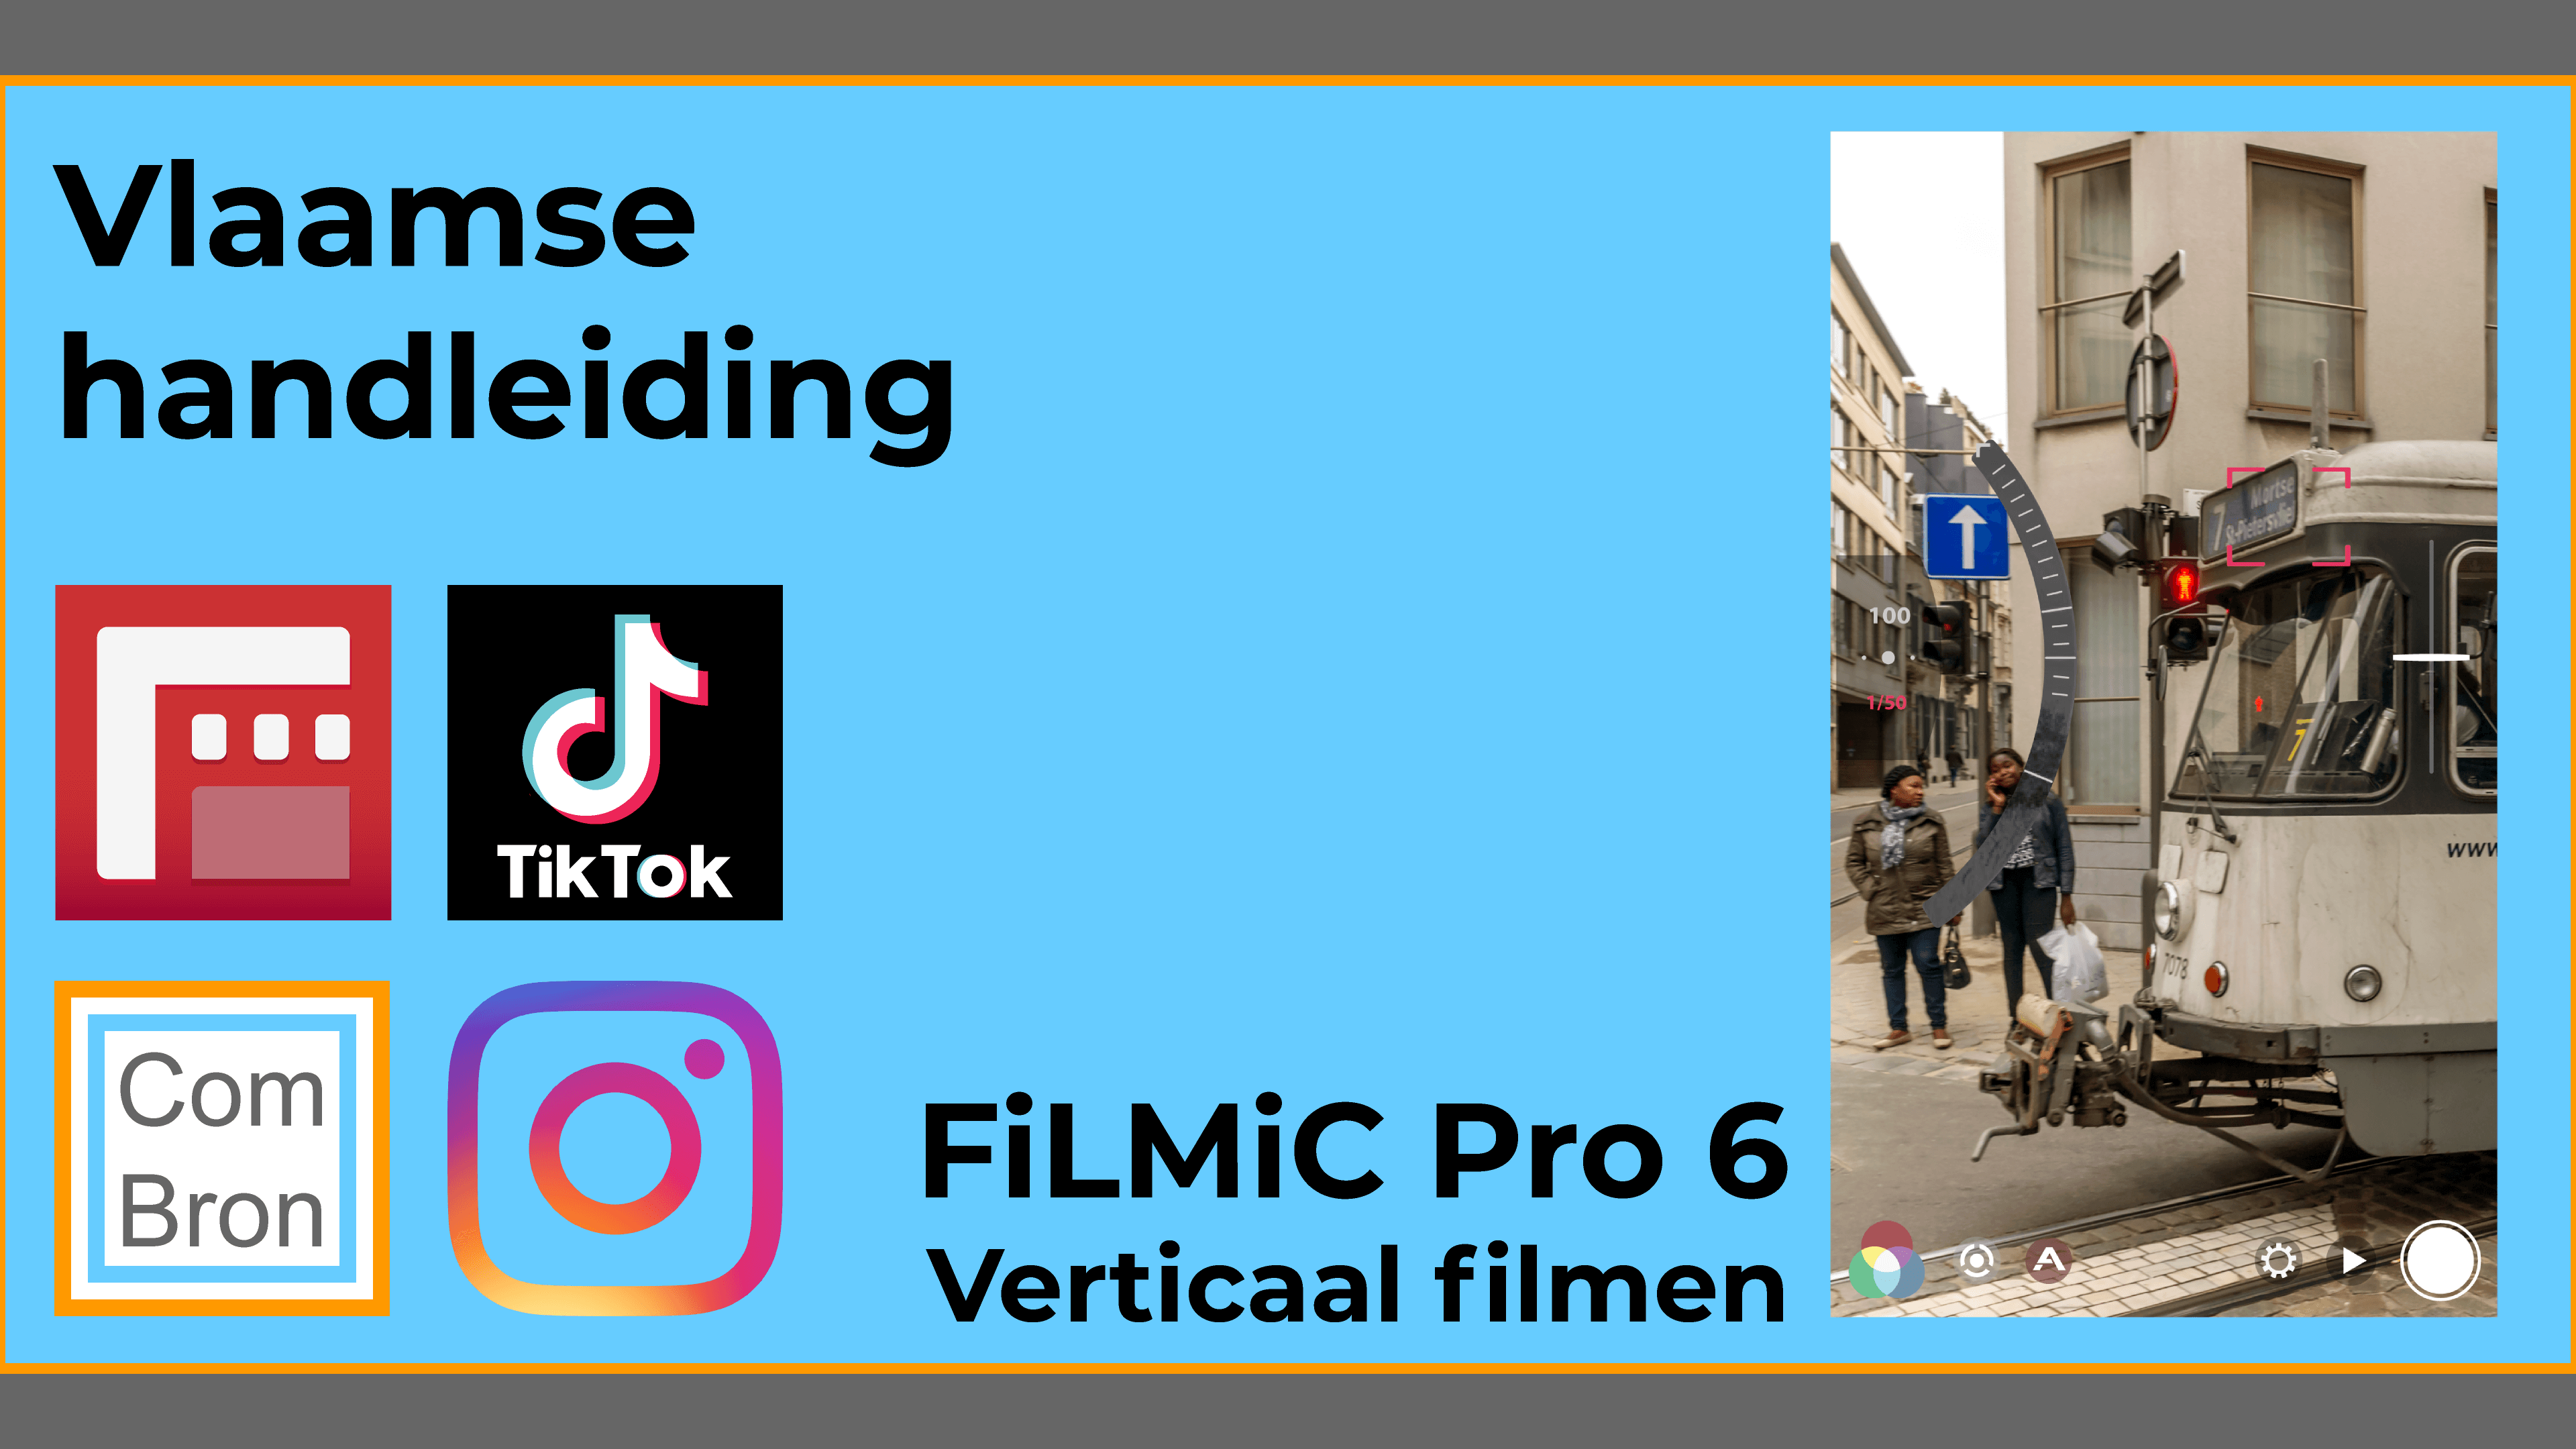 Vlaamse handleiding FiLMiC Pro met uitleg over verticaal filmen zoals voor TikTok en Instagram.